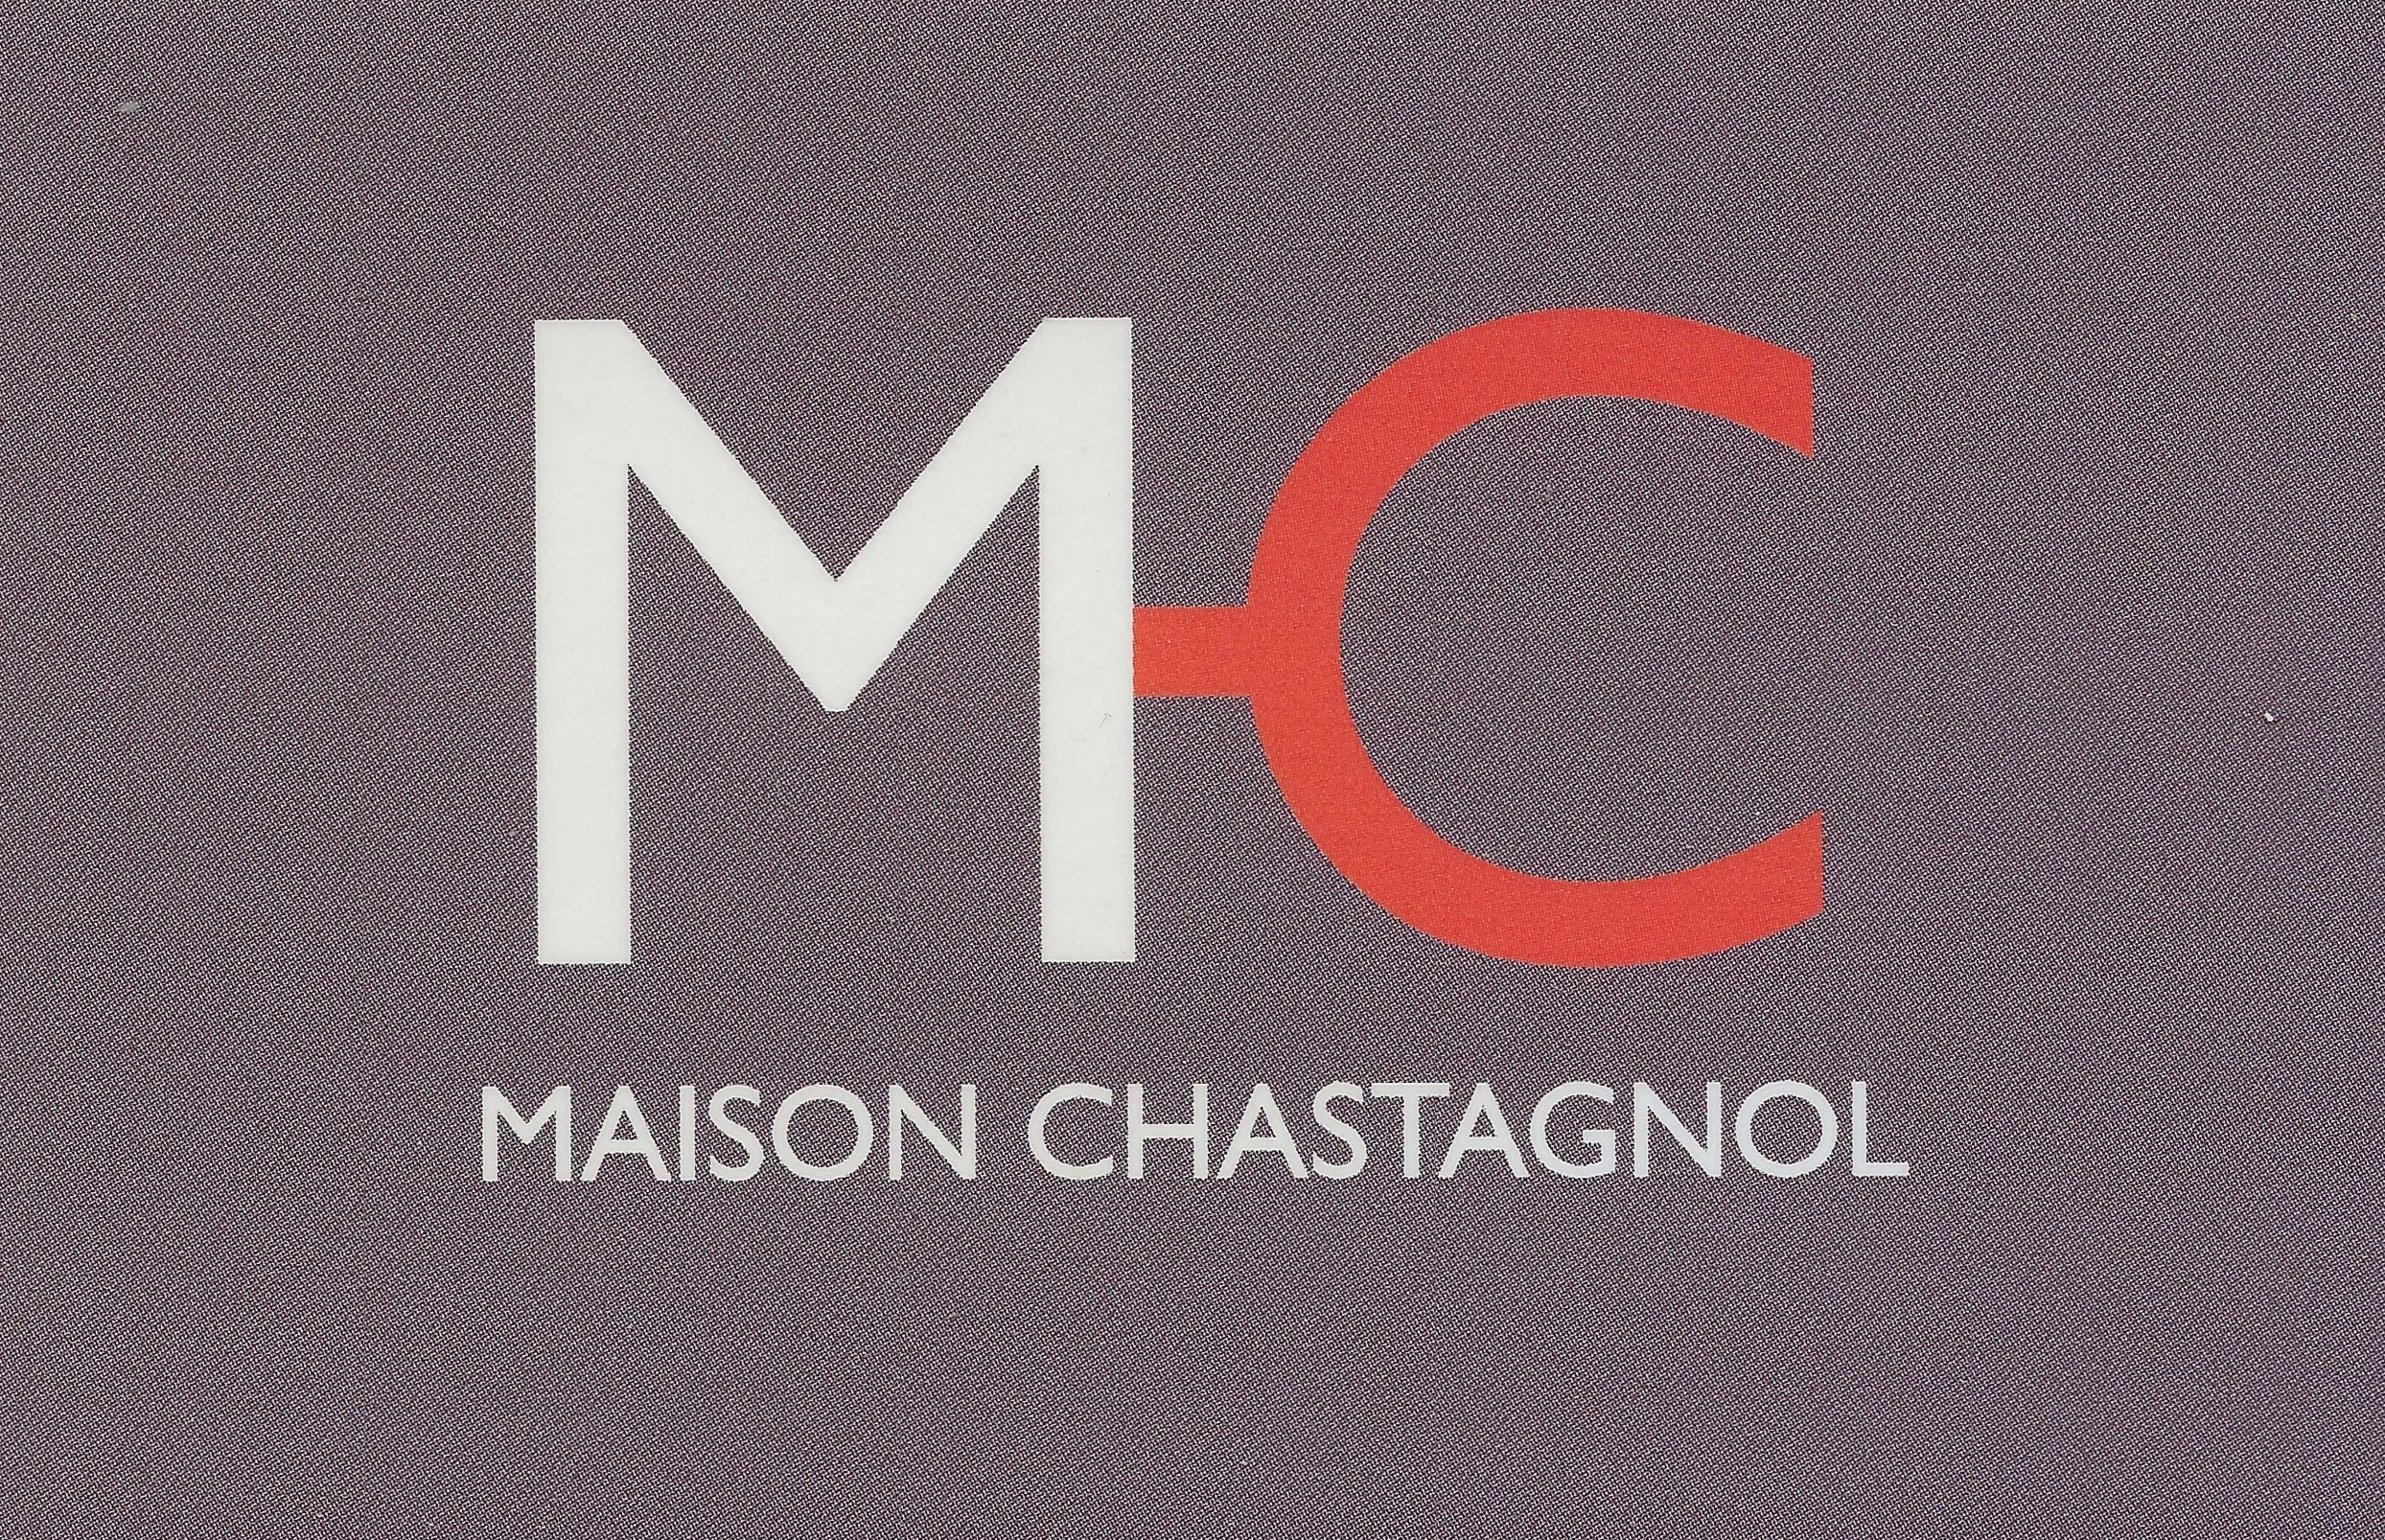 LGA - MAISON CHASTAGNOL 1.jpg